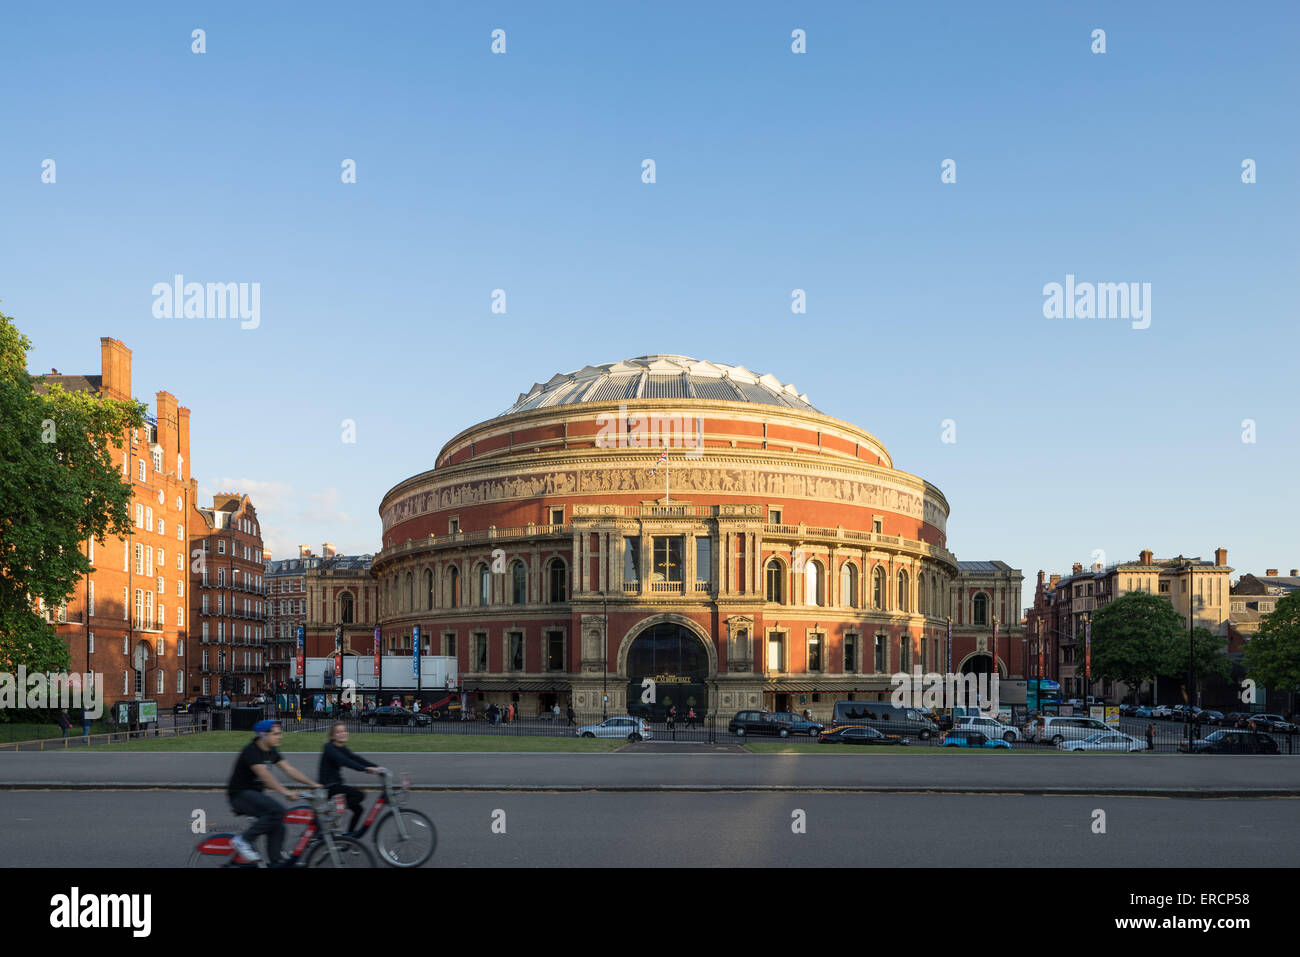 Royal Albert Hall, London England. Stock Photo